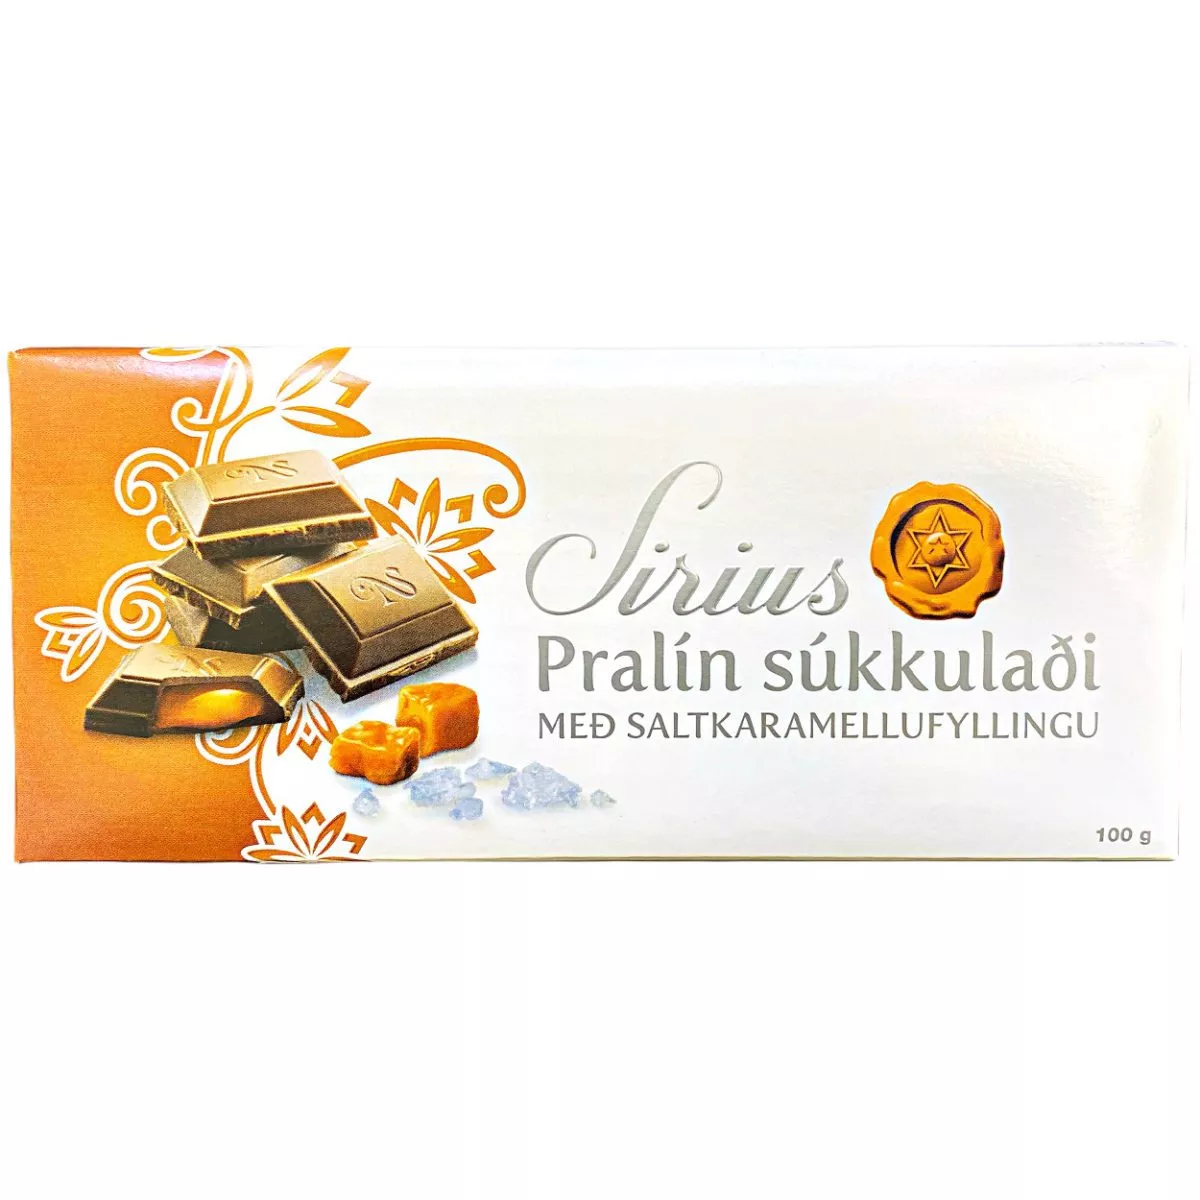 Noi Sirius Rjomasukkuladi Schokolade Praline-Karamell (100g) 1